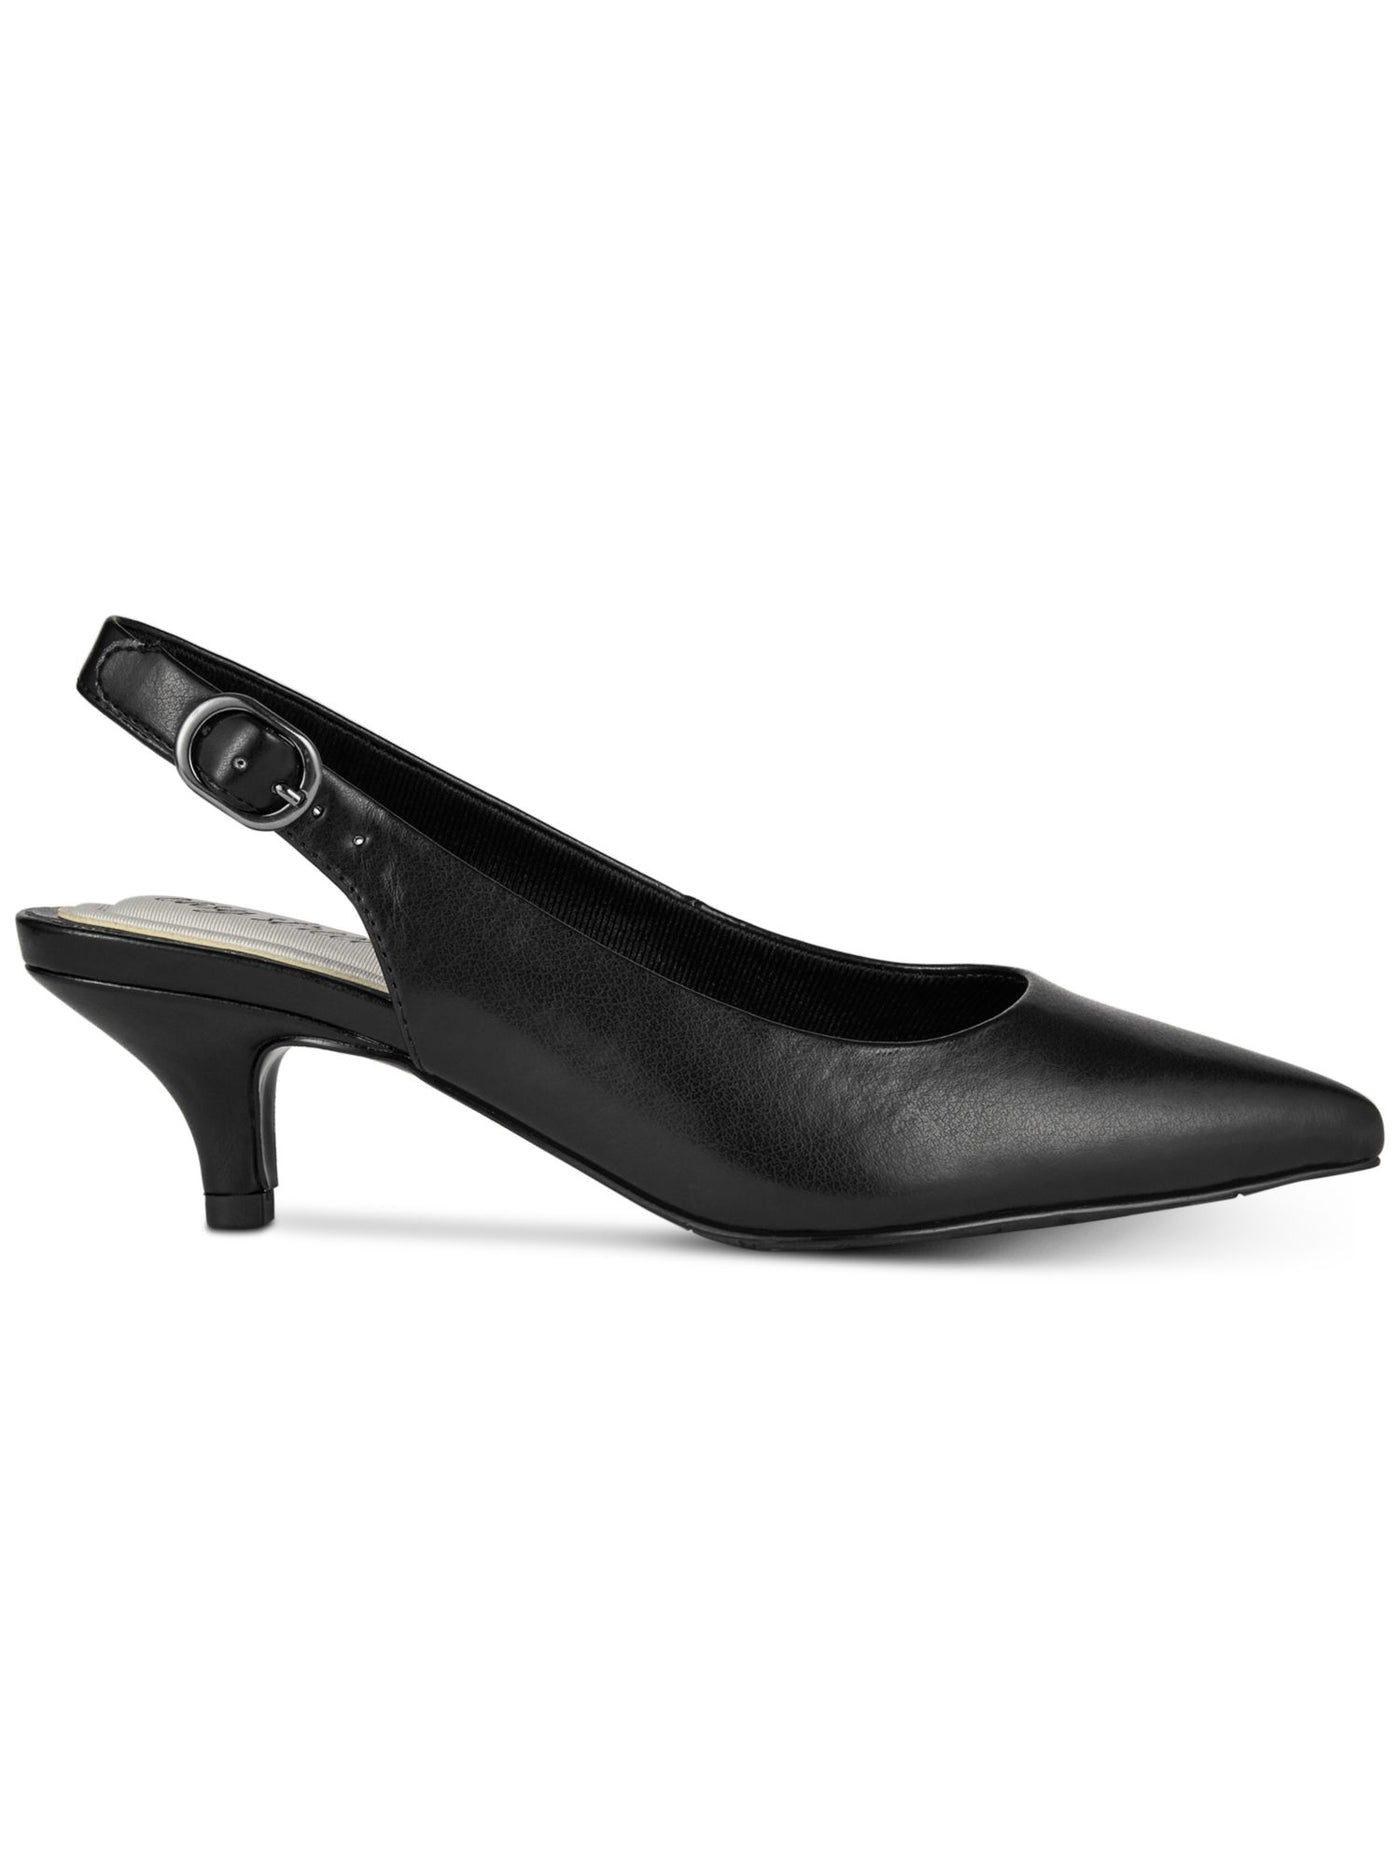 EASY STREET Womens Black Stretch Gore Padded Adjustable Faye Pointed Toe Kitten Heel Buckle Dress Slingback 7 W